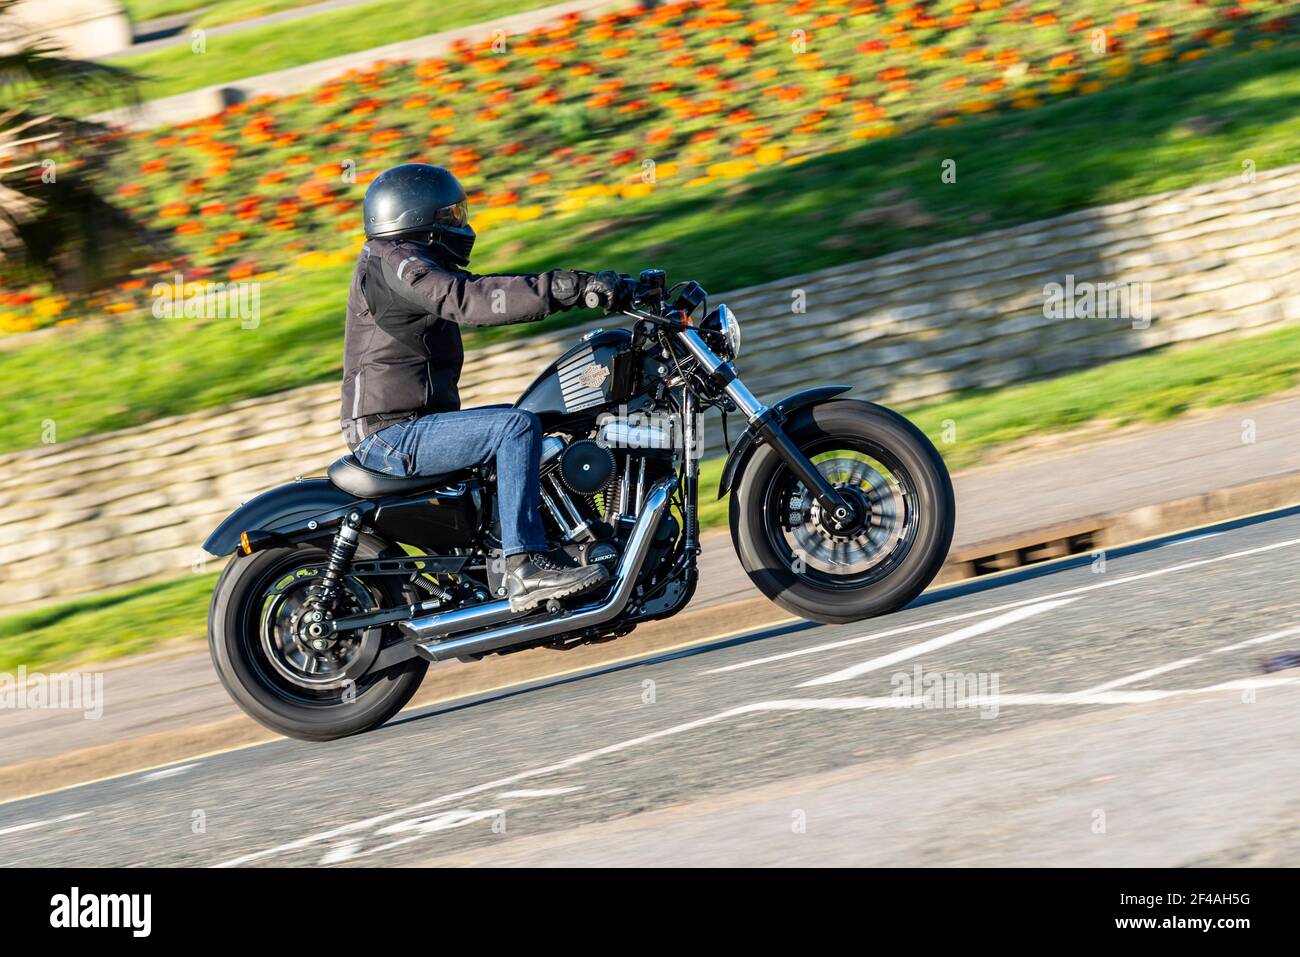 Harley Davidson quarante-huit motos en train d'être monté à Southend on Sea, Essex, Royaume-Uni, lors d'une journée ensoleillée, passant par les Cliff Gardens Banque D'Images